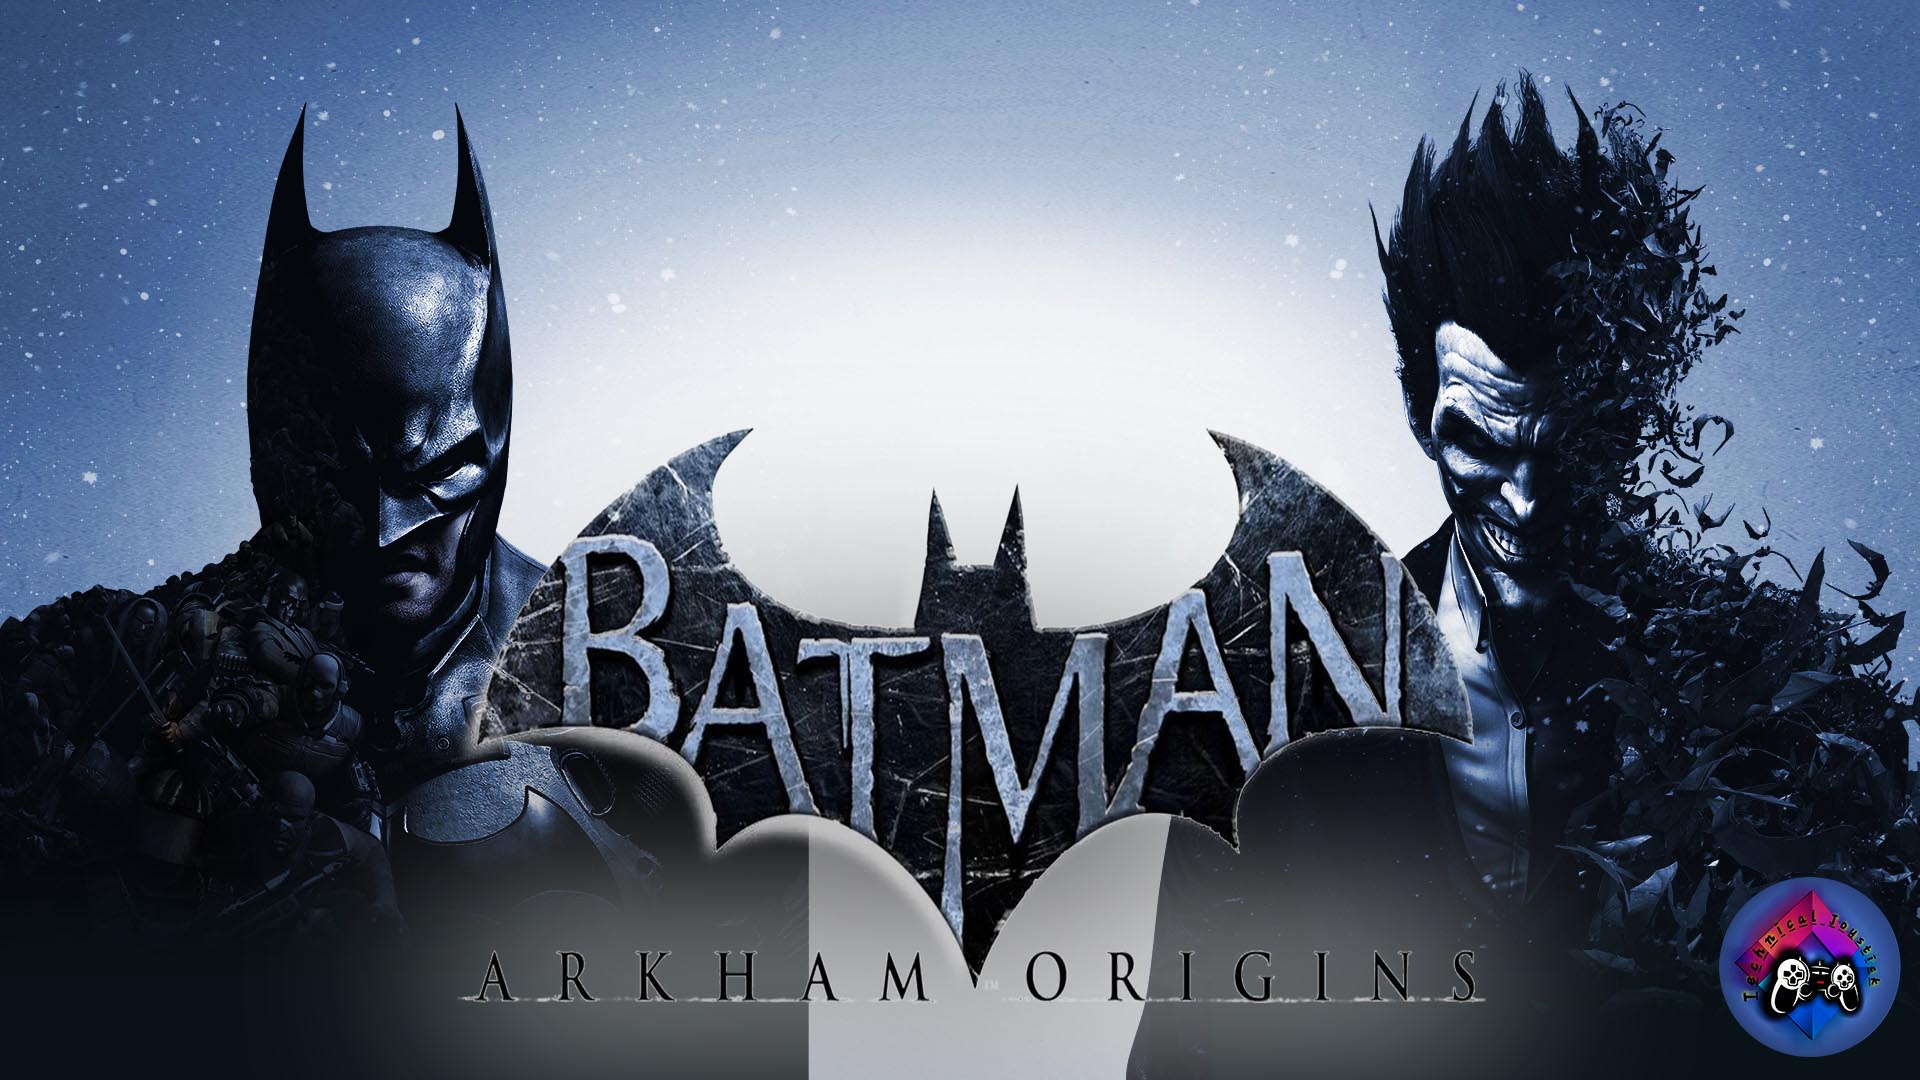 download batman arkham knight pc free blackbox repack